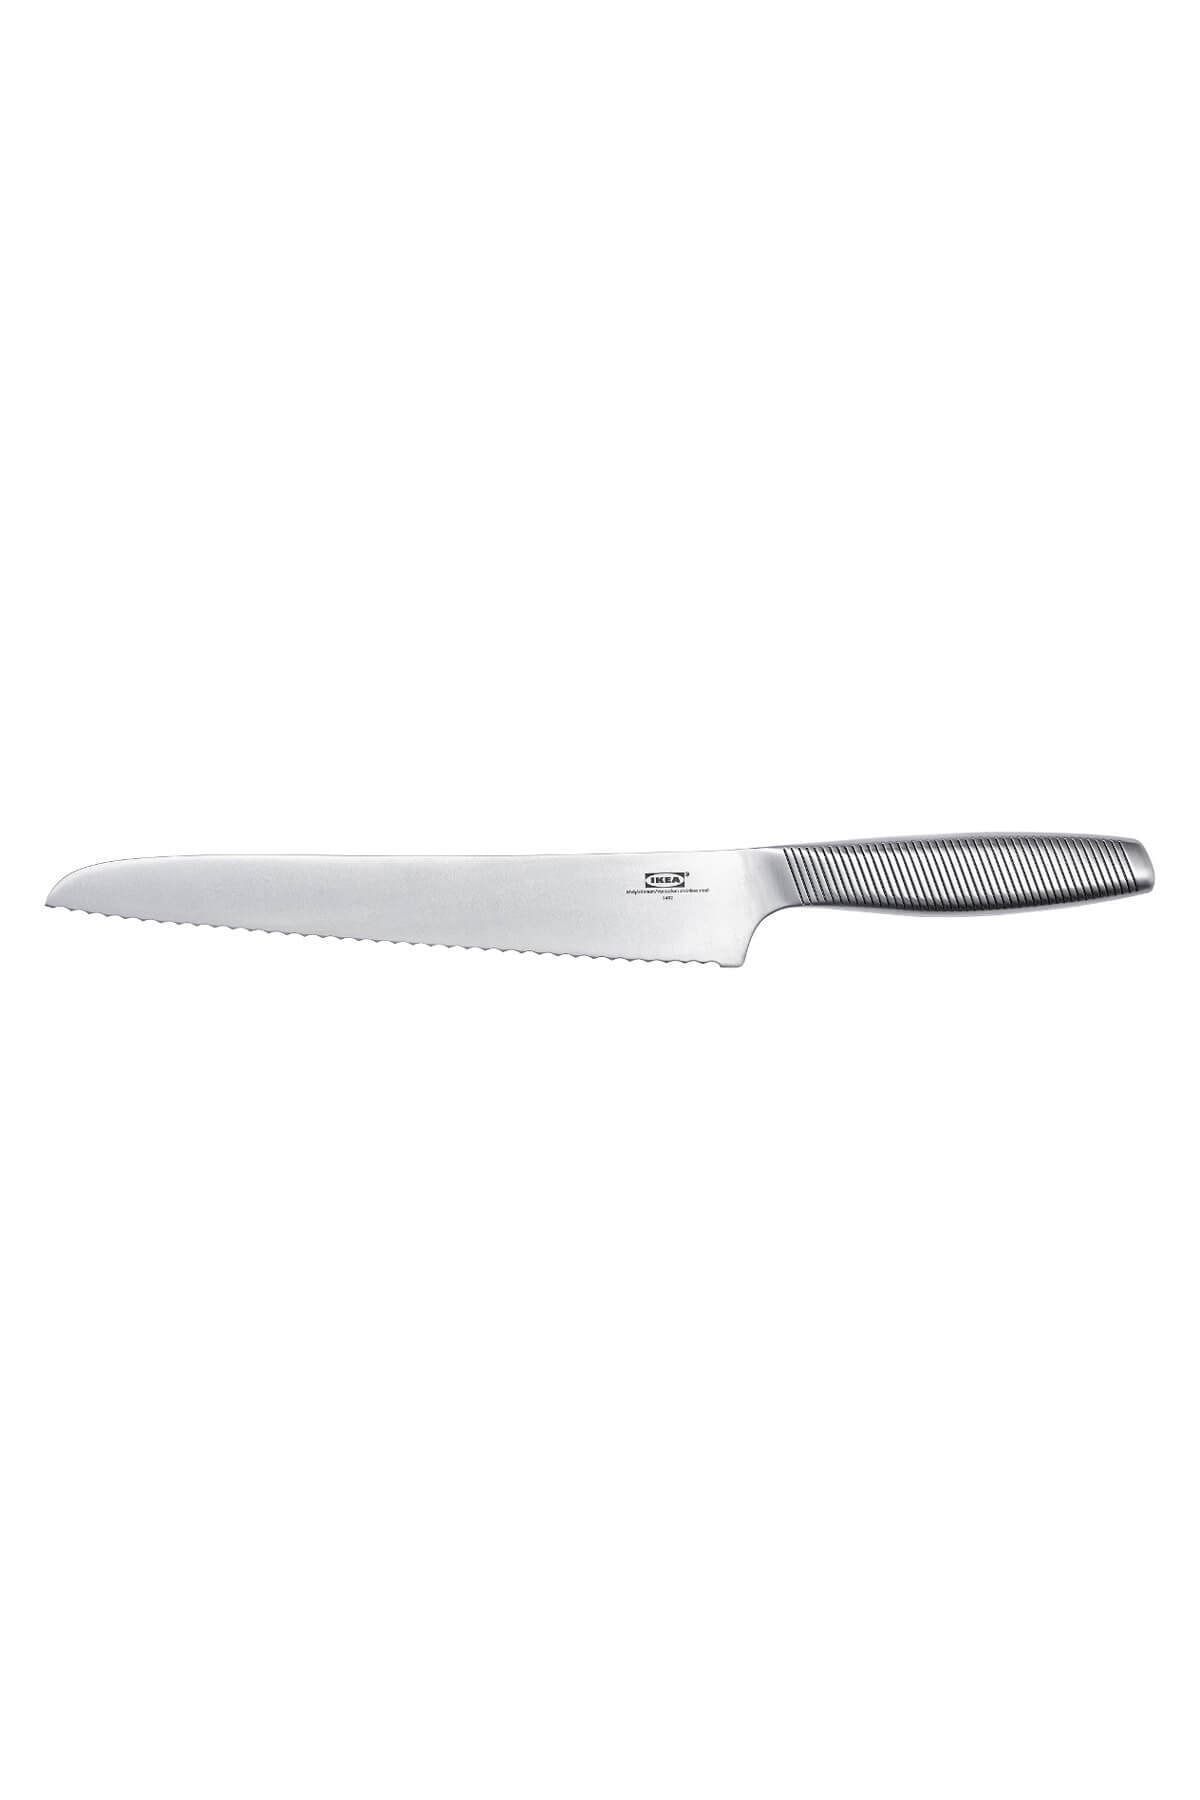 IKEA Ekmek Bıçağı - Paslanmaz Çelik - 23 cm